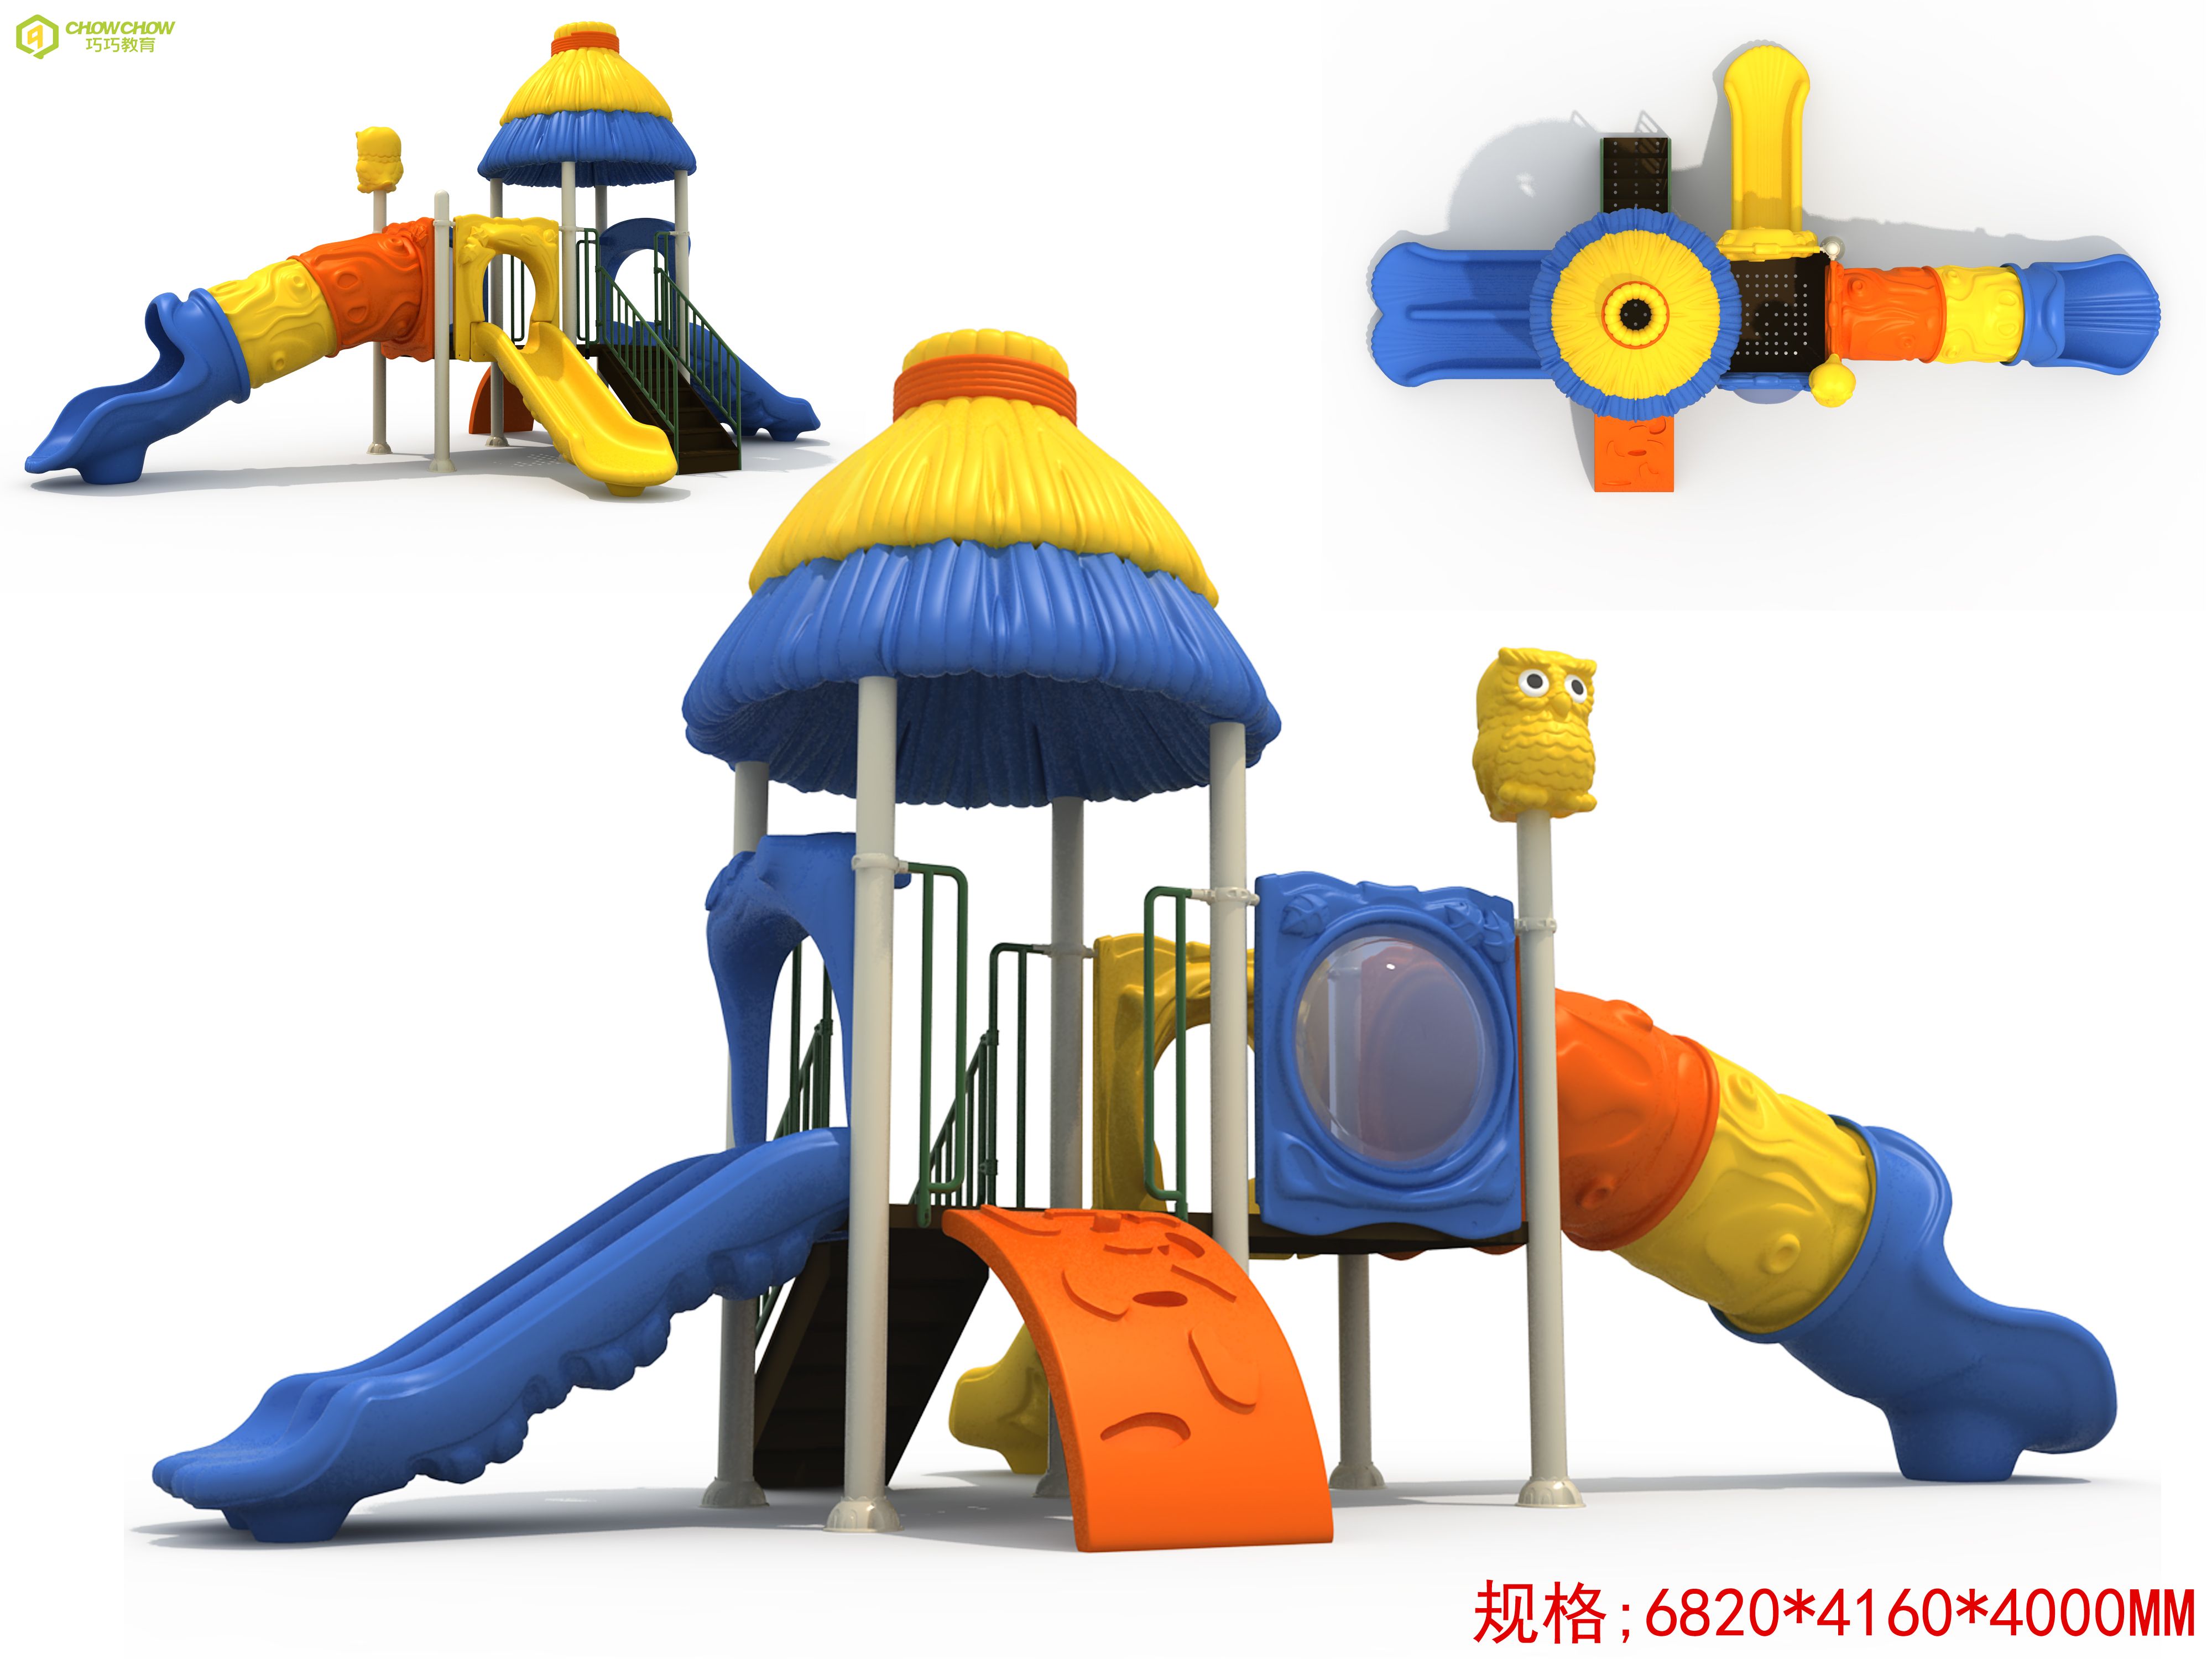 Outdoor Kids Slide Big Slides Outdoor Playground Outdoor Children Playground Equipment Outdoor Kids Slide